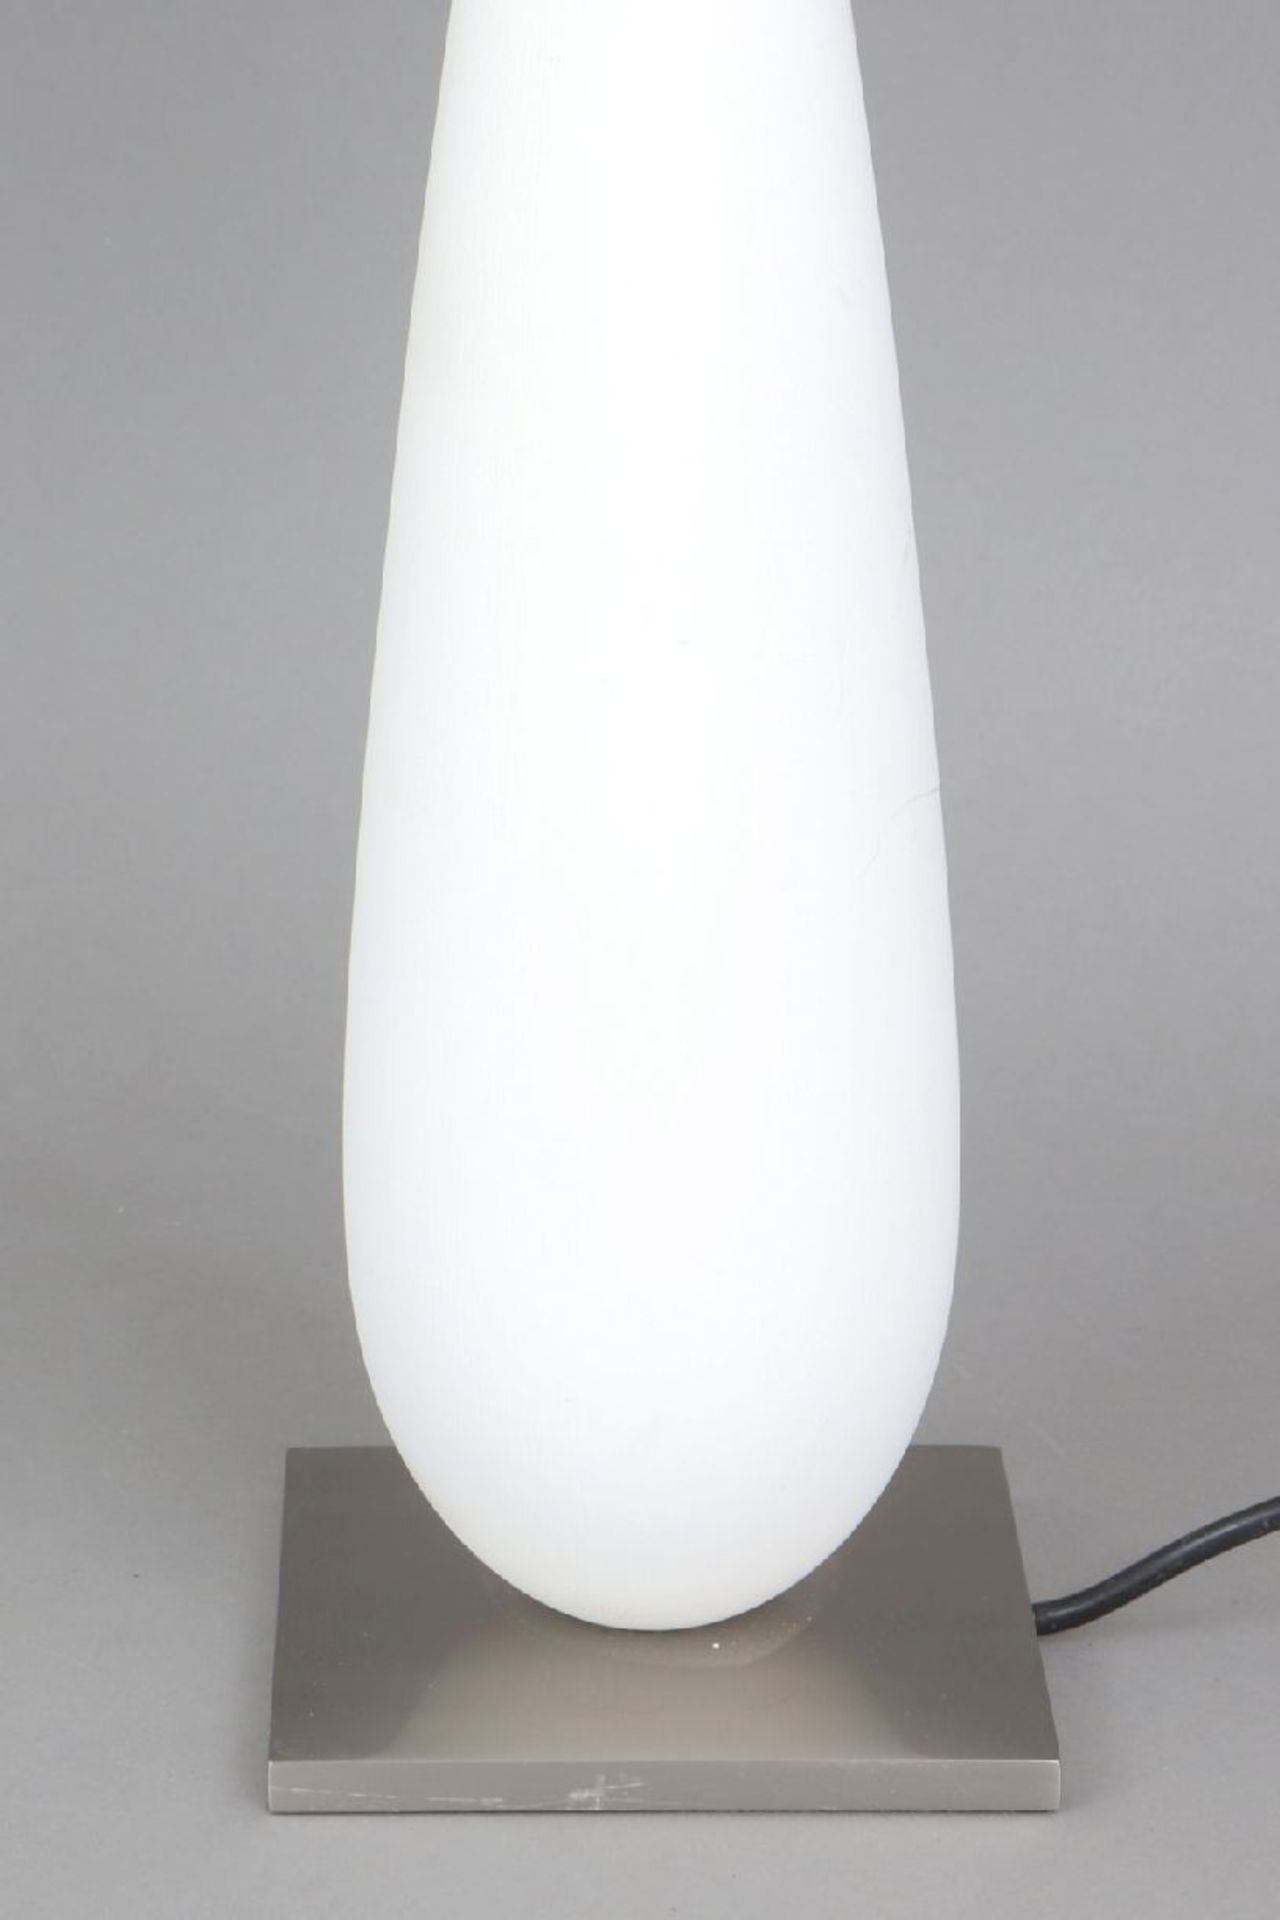 SCHÖNECKER LEUCHTEN TischlampeStand in Keulenform, weiß lackiert, gebürsteter Stahlstand und - - Image 2 of 4